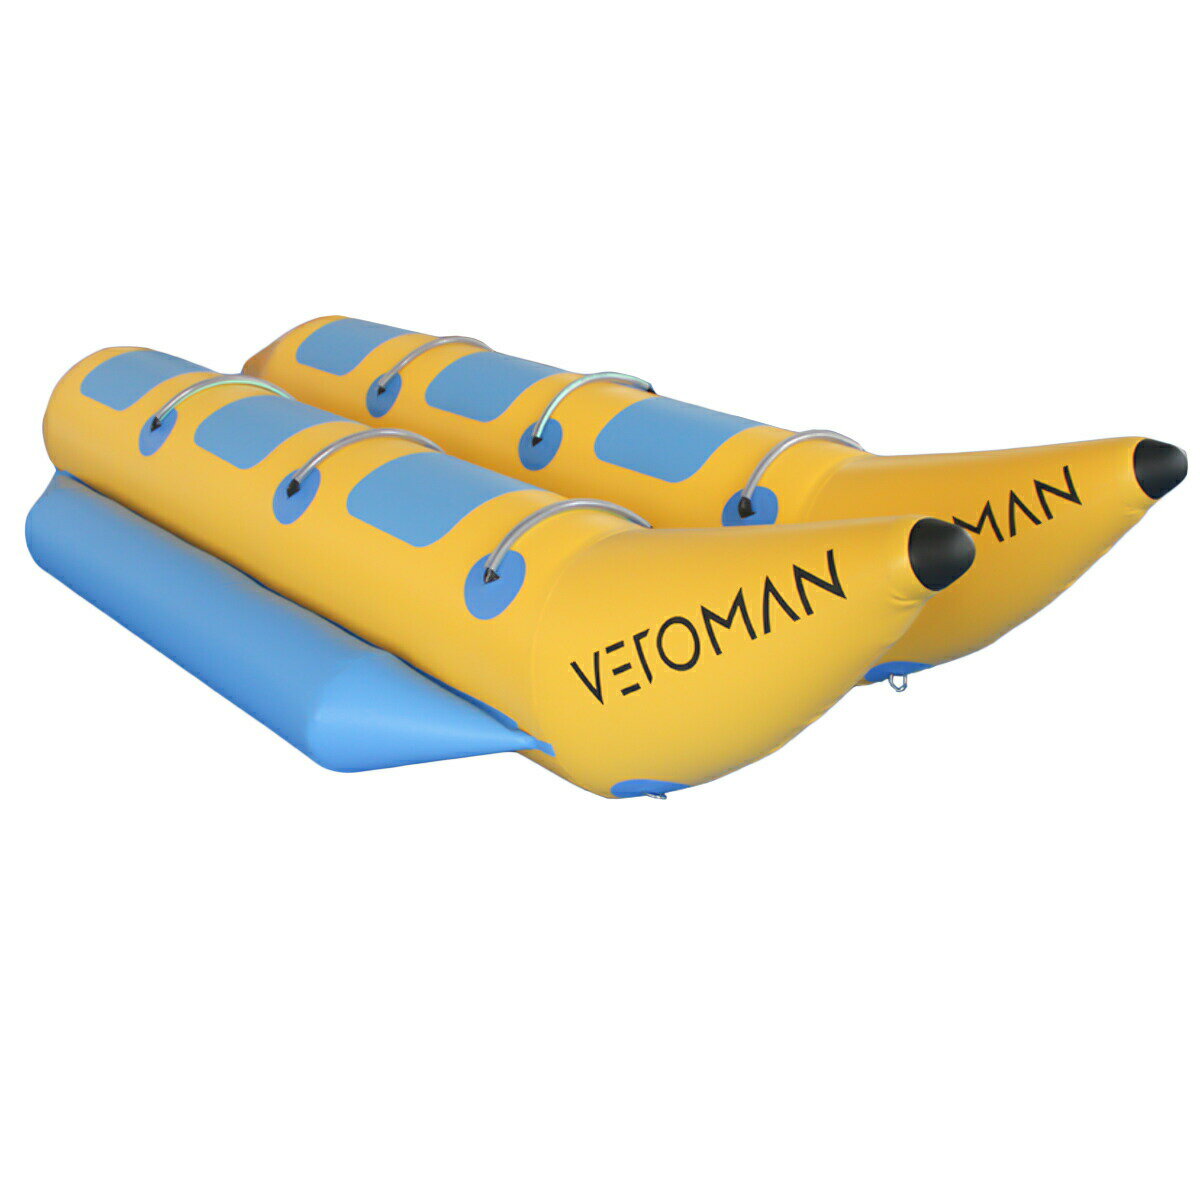 商 品 詳 細 ブランド VEROMAN セット内容 ・バナナボート ・ロープ 素材 PVC 100% サイズ 6人乗り 約長さ3.6m × 幅1.7m カラー イエロー＋ブルー 特徴 1、SNSで話題沸騰中。子供も大人もゆったり乗れるフロート。海やプールで大活躍。 2、耐摩耗性、引裂抵抗、良好な気密性、高強度および耐久性を有するバナナボートです。 3、池や湖、海でも楽しめる完璧な製品。 大人〜子どもまでみんなで楽しめます。 検索キーワード マリンスポーツ ウォータートイ ジェットスキー 水上スキー 水上バイク マリンレジャー ボート フロート スノーバナナ プール 水遊び うきわ 海 浮輪 可愛い おしゃれ 面白 ビーチ リゾート SNS インスタ ナイトプール ※商品はモニターの発色によって実際のものと色が異なる場合がございます 。 ※仕様・デザインは予告なく変更することがあります。 ※計測の仕方によって、長さ、幅の数字が多少前後することがございます。 関連商品[5人乗り / ブルー] VeroMan バナナボート トーイングチュ...[5人乗り] VeroMan バナナボート トーイングチューブ インフ...[4人乗り] VeroMan バナナボート トーイングチューブ インフ...64,800円64,800円57,800円[3人乗り] VeroMan バナナボート トーイングチューブ インフ...[4人乗り] VeroMan バナナボート ブルー トーイングチューブ...[全長約5m] VeroMan 超巨大 乗れる浮き輪 ユニコーン ペガ...49,800円57,800円49,800円VeroMan 船外機 エンジン 3.5馬力 2ストローク モーター ...VeroMan プールポンテーブル ビアポンテーブル インフレータブル...[5人乗り] VeroMan 雪上 バナナボート スノーラフティング ...47,777円2,980円74,800円商 品 詳 細 ブランド VEROMAN セット内容 ・バナナボート ・ロープ 素材 PVC 100% サイズ 6人乗り 約長さ3.6m × 幅1.7m カラー イエロー＋ブルー 特徴 1、SNSで話題沸騰中。子供も大人もゆったり乗れるフロート。海やプールで大活躍。 2、耐摩耗性、引裂抵抗、良好な気密性、高強度および耐久性を有するバナナボートです。 3、池や湖、海でも楽しめる完璧な製品。 大人〜子どもまでみんなで楽しめます。 検索キーワード マリンスポーツ ウォータートイ ジェットスキー 水上スキー 水上バイク マリンレジャー ボート フロート スノーバナナ プール 水遊び うきわ 海 浮輪 可愛い おしゃれ 面白 ビーチ リゾート SNS インスタ ナイトプール ※商品はモニターの発色によって実際のものと色が異なる場合がございます 。 ※仕様・デザインは予告なく変更することがあります。 ※計測の仕方によって、長さ、幅の数字が多少前後することがございます。